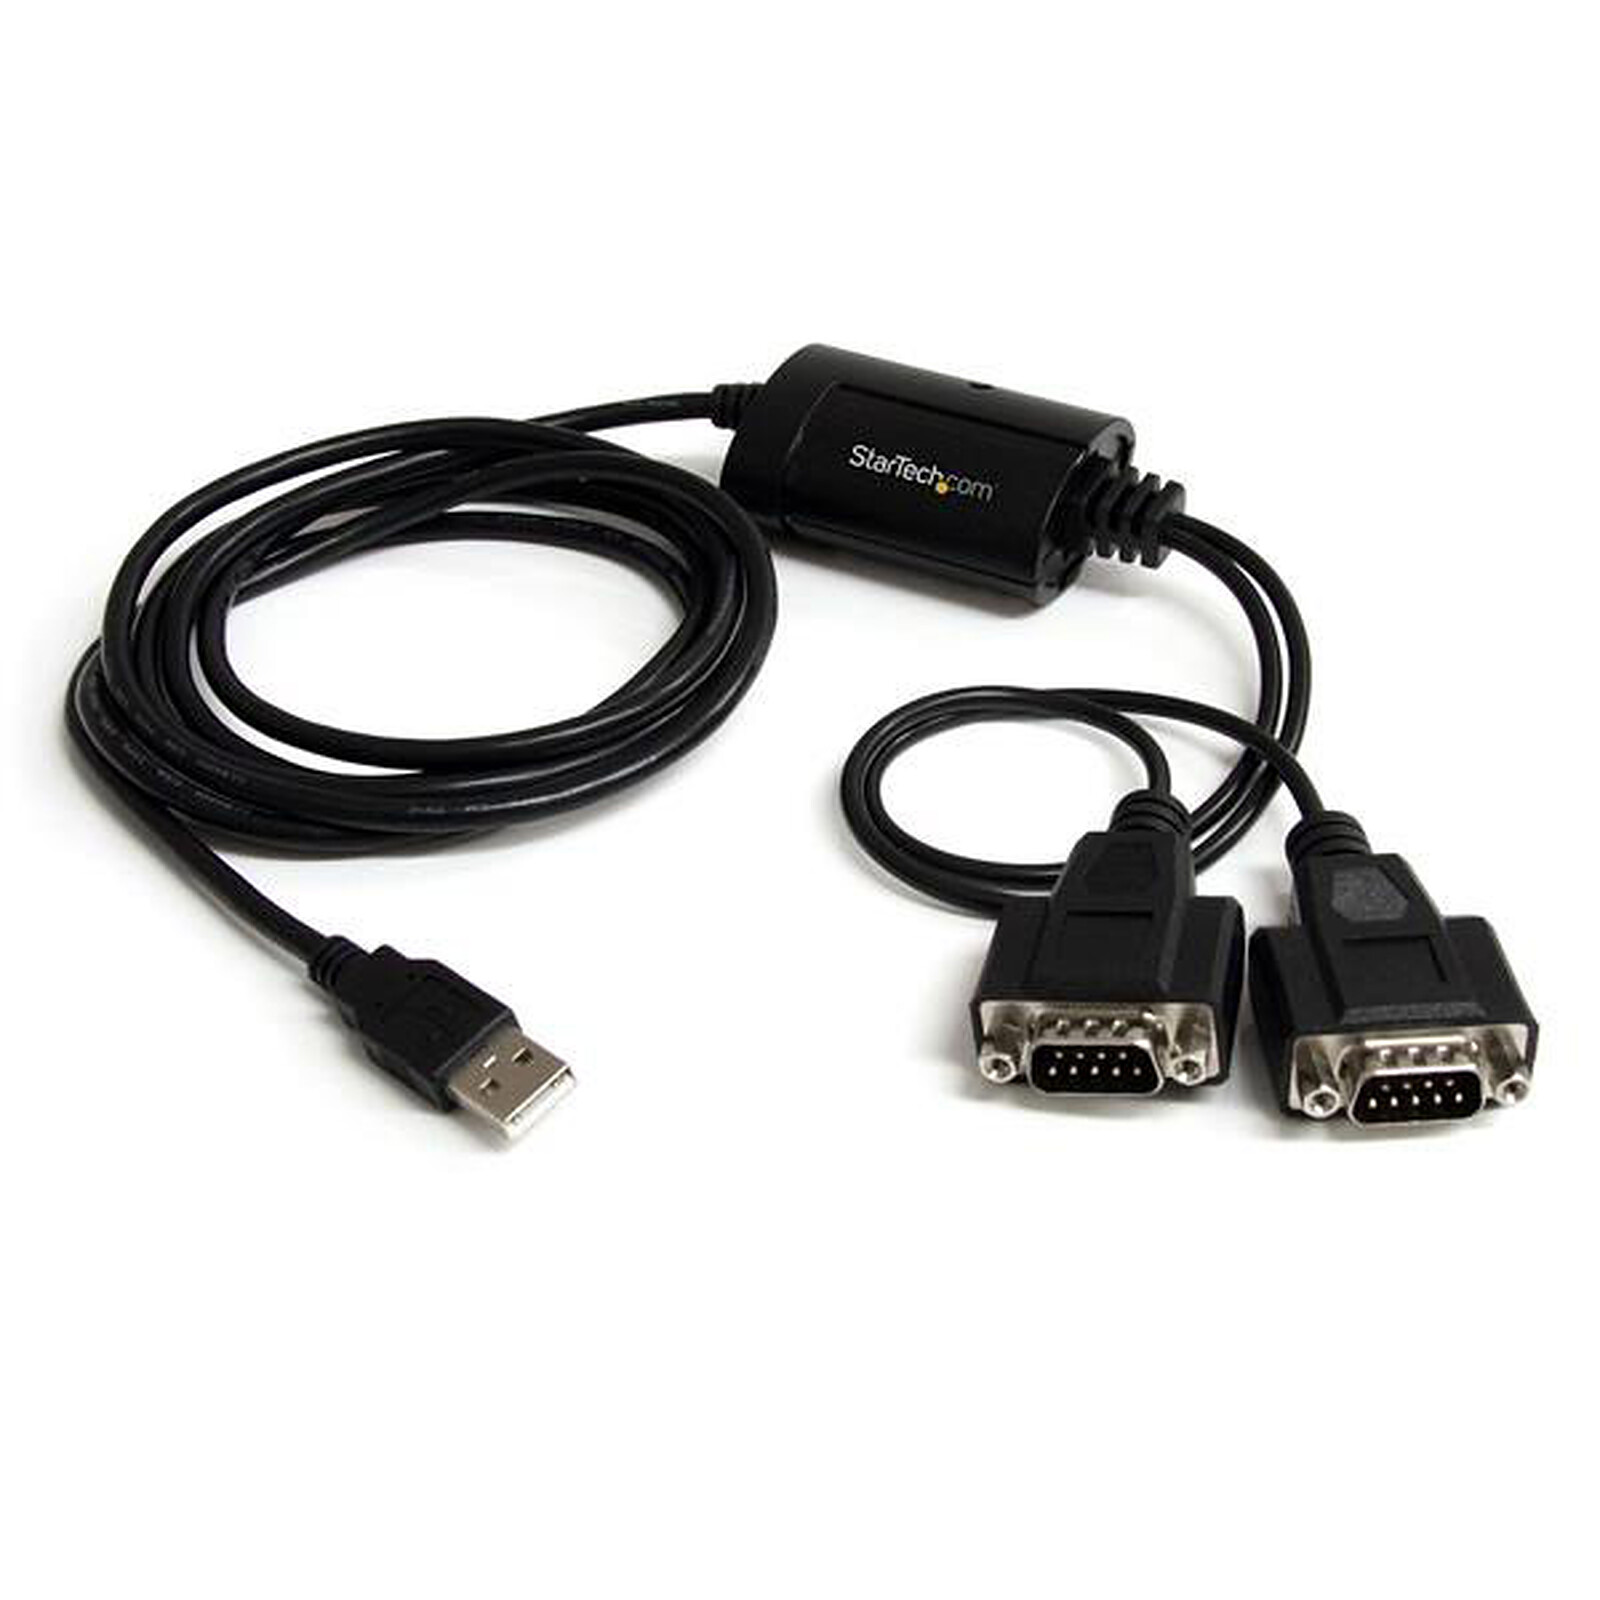 Connecteur USB C Femelle vers Mâle RS PRO ports, Montage panneau